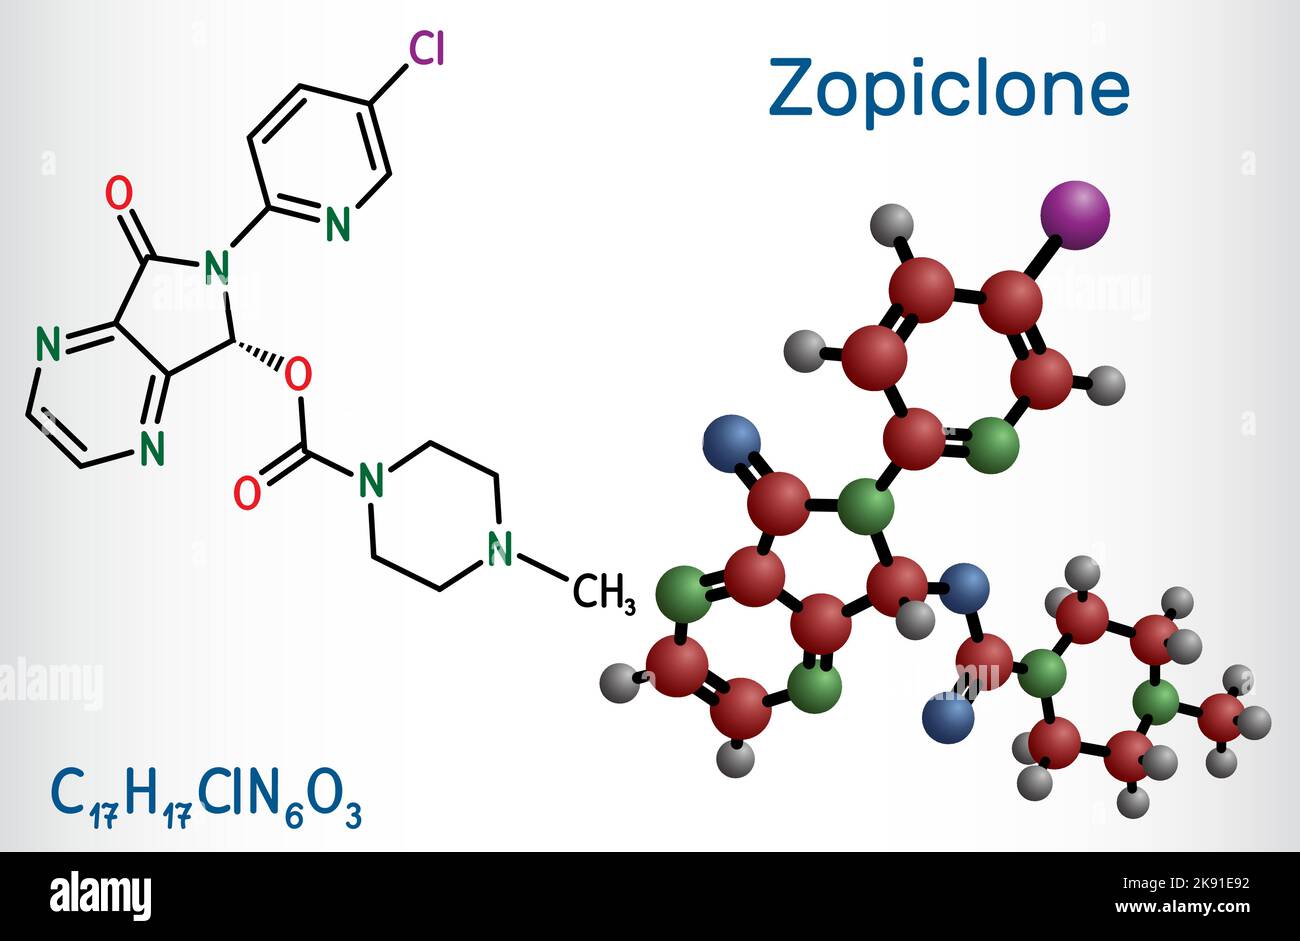 Zopicrone-Molekül. Strukturelle chemische Formel und Molekülmodell. Stock Vektor